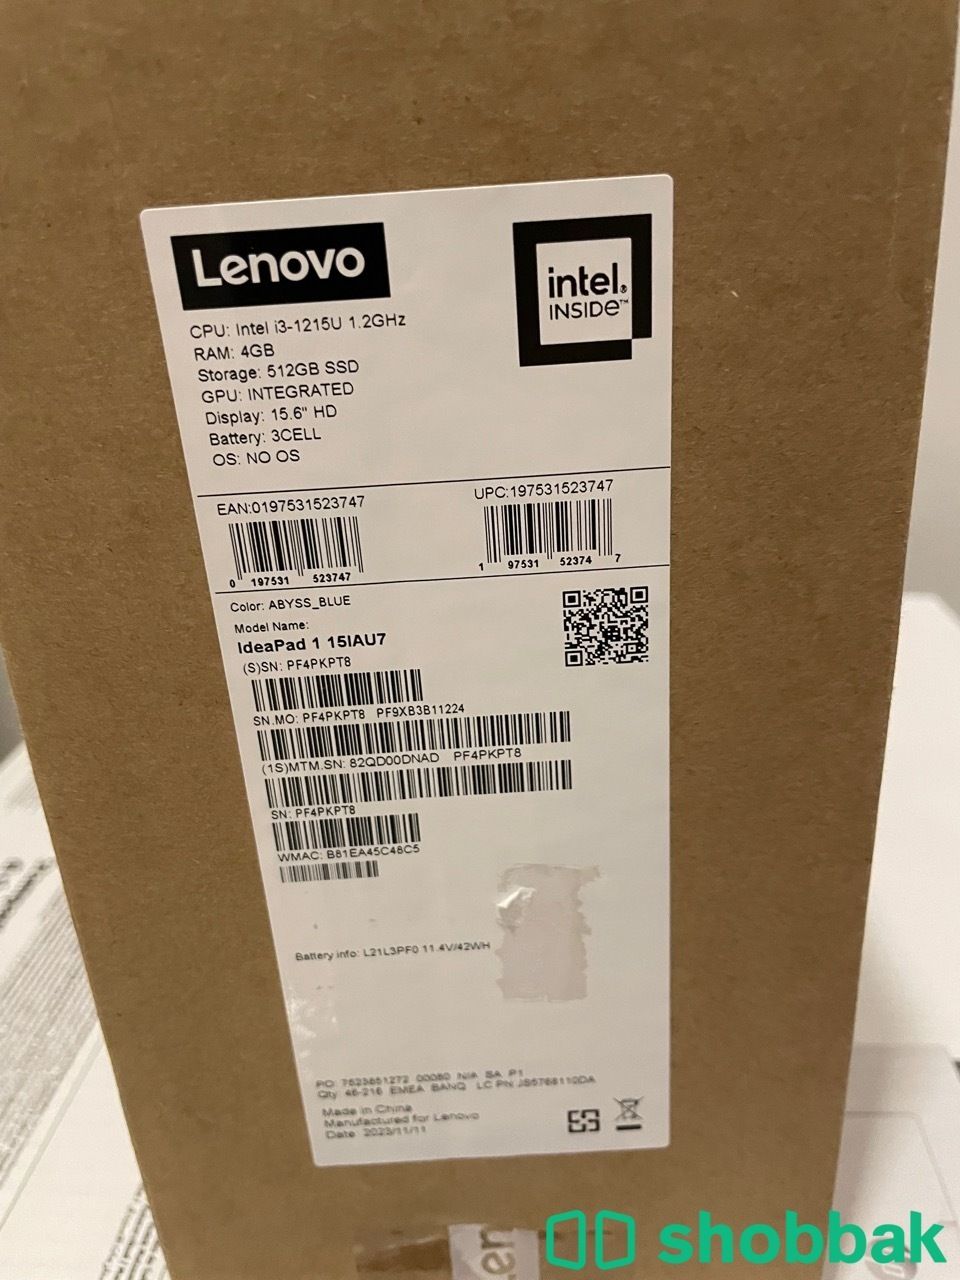 لاب توب محمول شركه Lenovo كمبيوتر مكتبي شركه DELL طابعه ليزر hp mfp 137nw طابعه  شباك السعودية